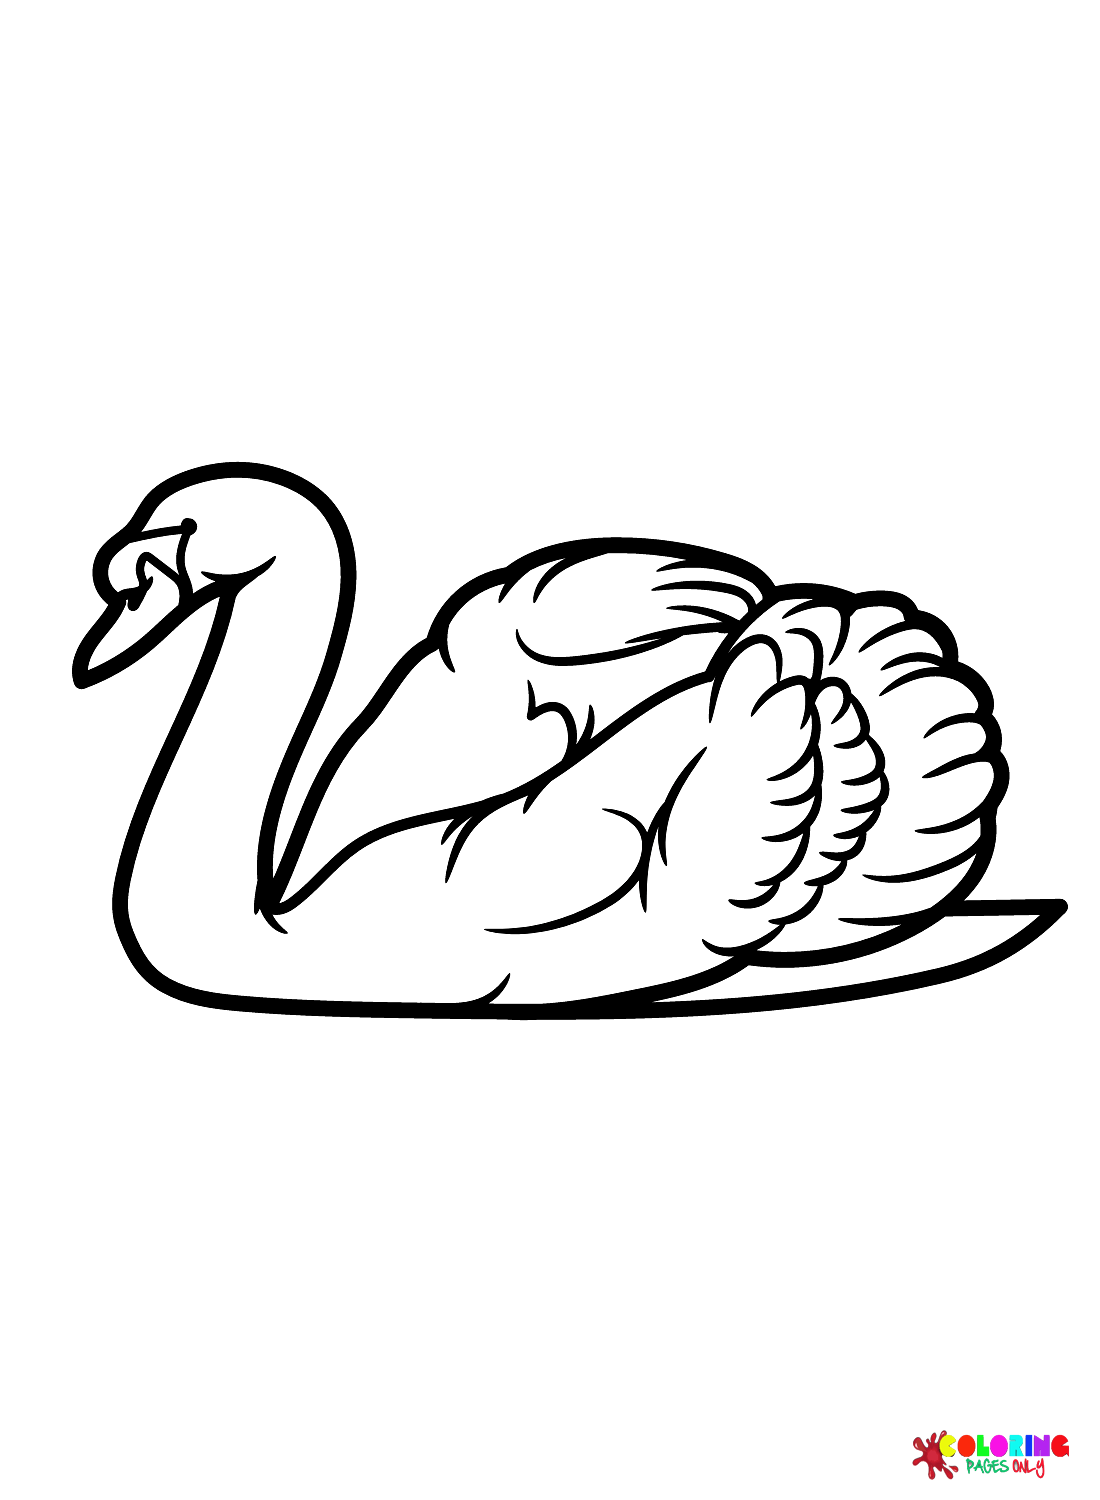 Лебединый цвет Листы от Swan